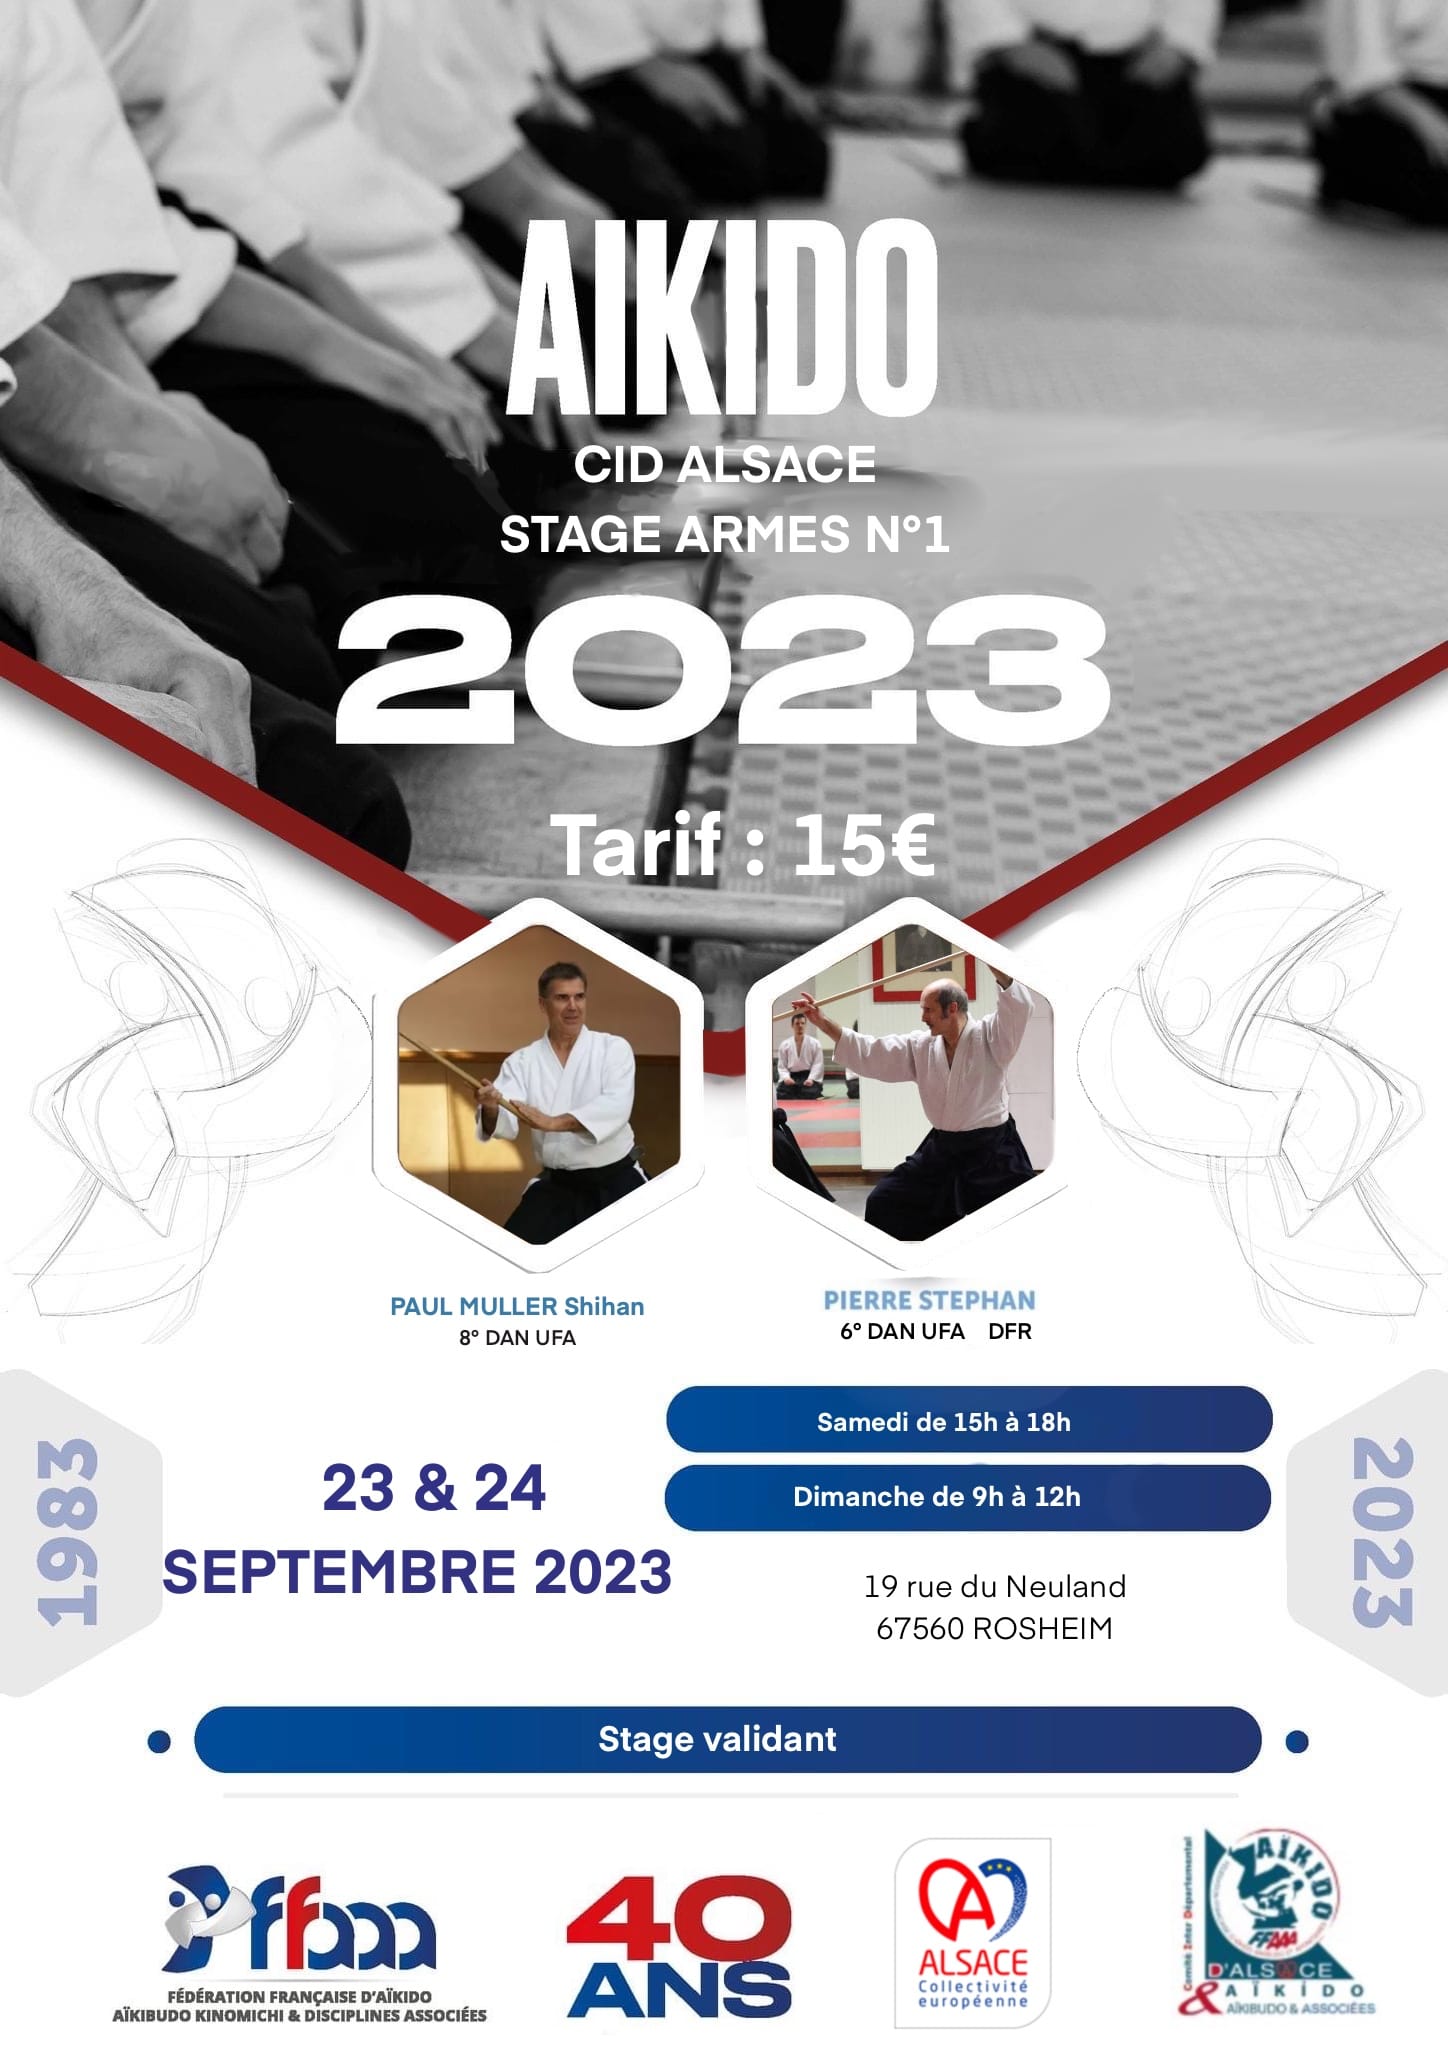 Affiche du Stage d'Aïkido à Rosheim animé par Paul Muller du samedi 23 septembre 2023 au dimanche 24 septembre 2023